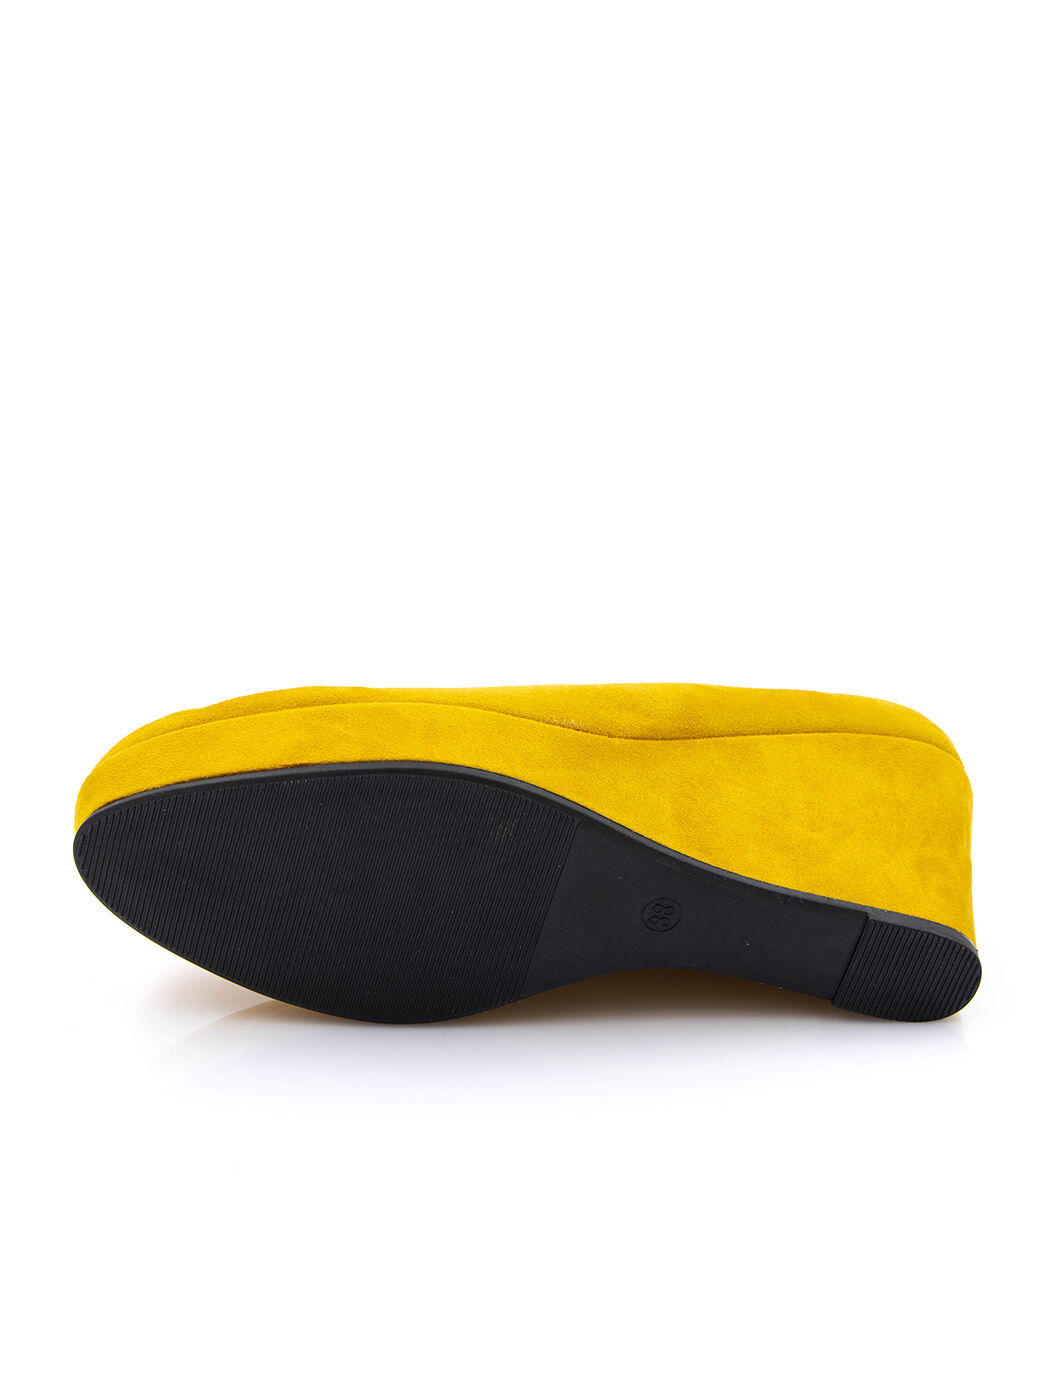 Туфли женские желтые экозамша каблук устойчивый демисезон от производителя 5M вид 1